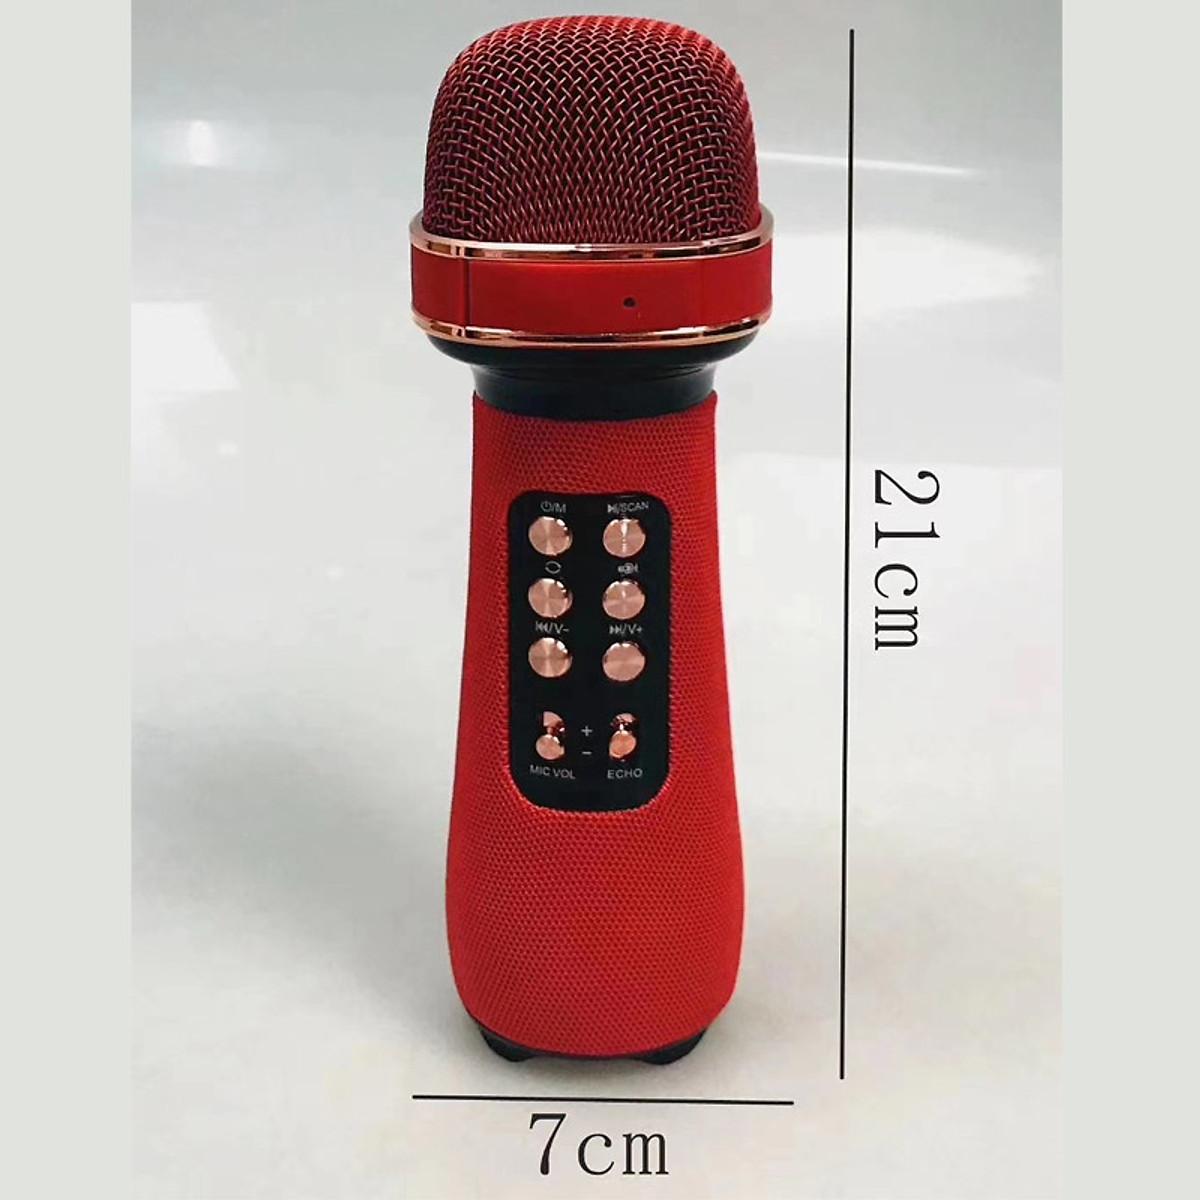 Micro Karaoke Bluetooth Cao Cấp CV Tích Hợp Loa Bass Siêu Trầm Không Dây, {Âm Thanh Đa Hướng 360°} Lan Tỏa Mạnh Mẽ, Mic Bắt Giọng Cực Tốt, Pin Trâu, Hỗ Trợ Nghe Gọi, USB, Thẻ Nhớ, Thay Đổi Giọng, FM Radio, Tín Hiệu Âm Thanh Ra - Hàng Chính Hãng